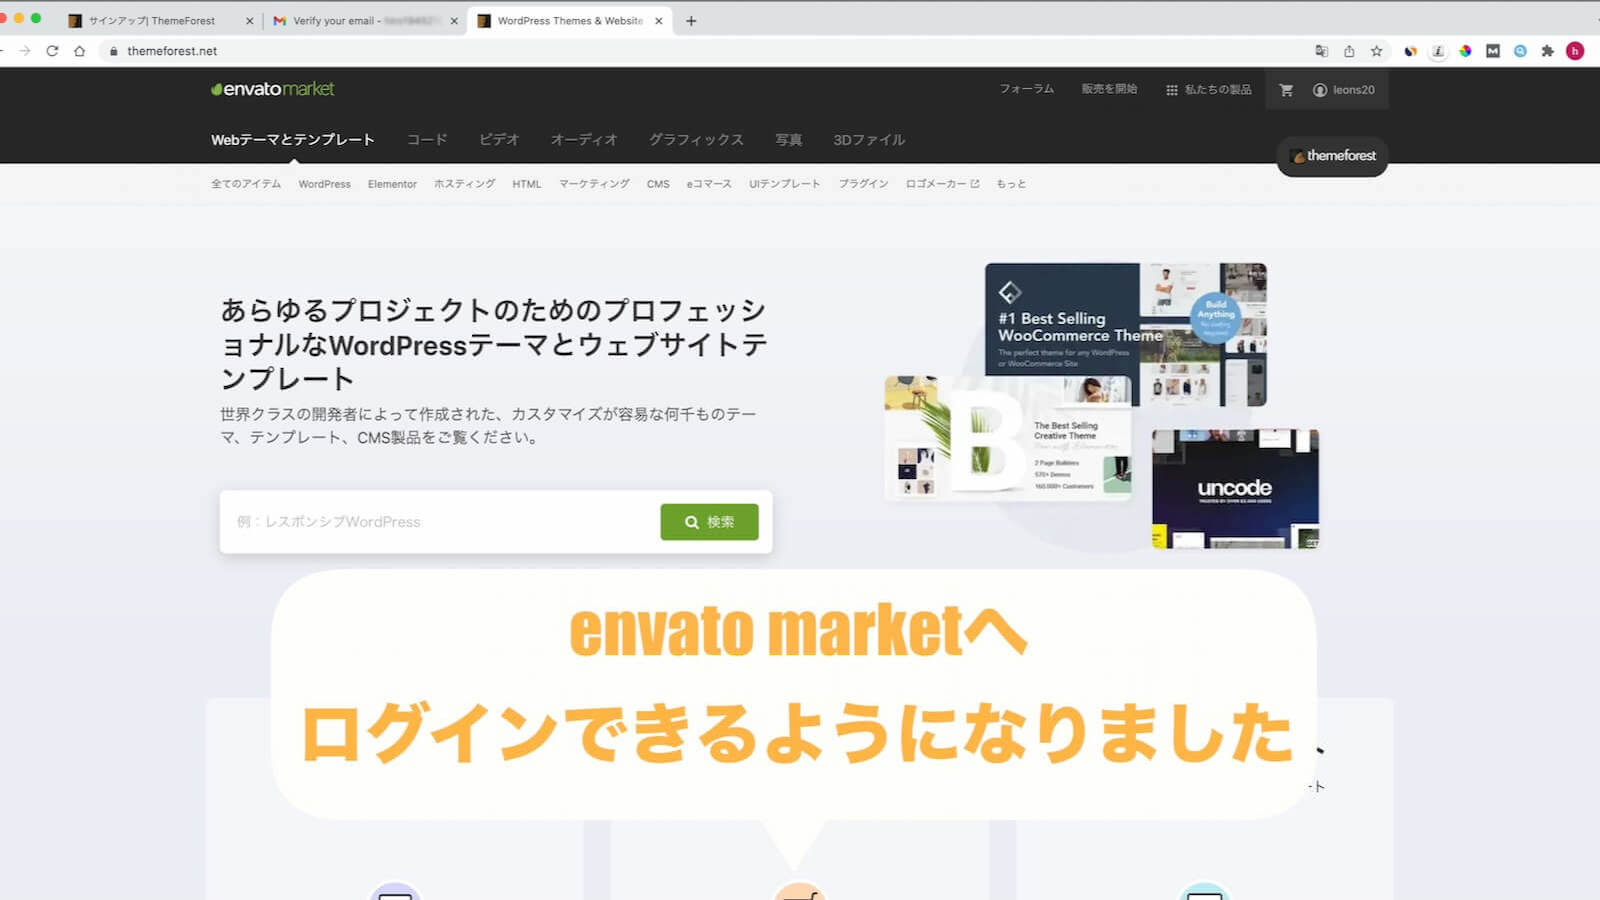 envato market homepage